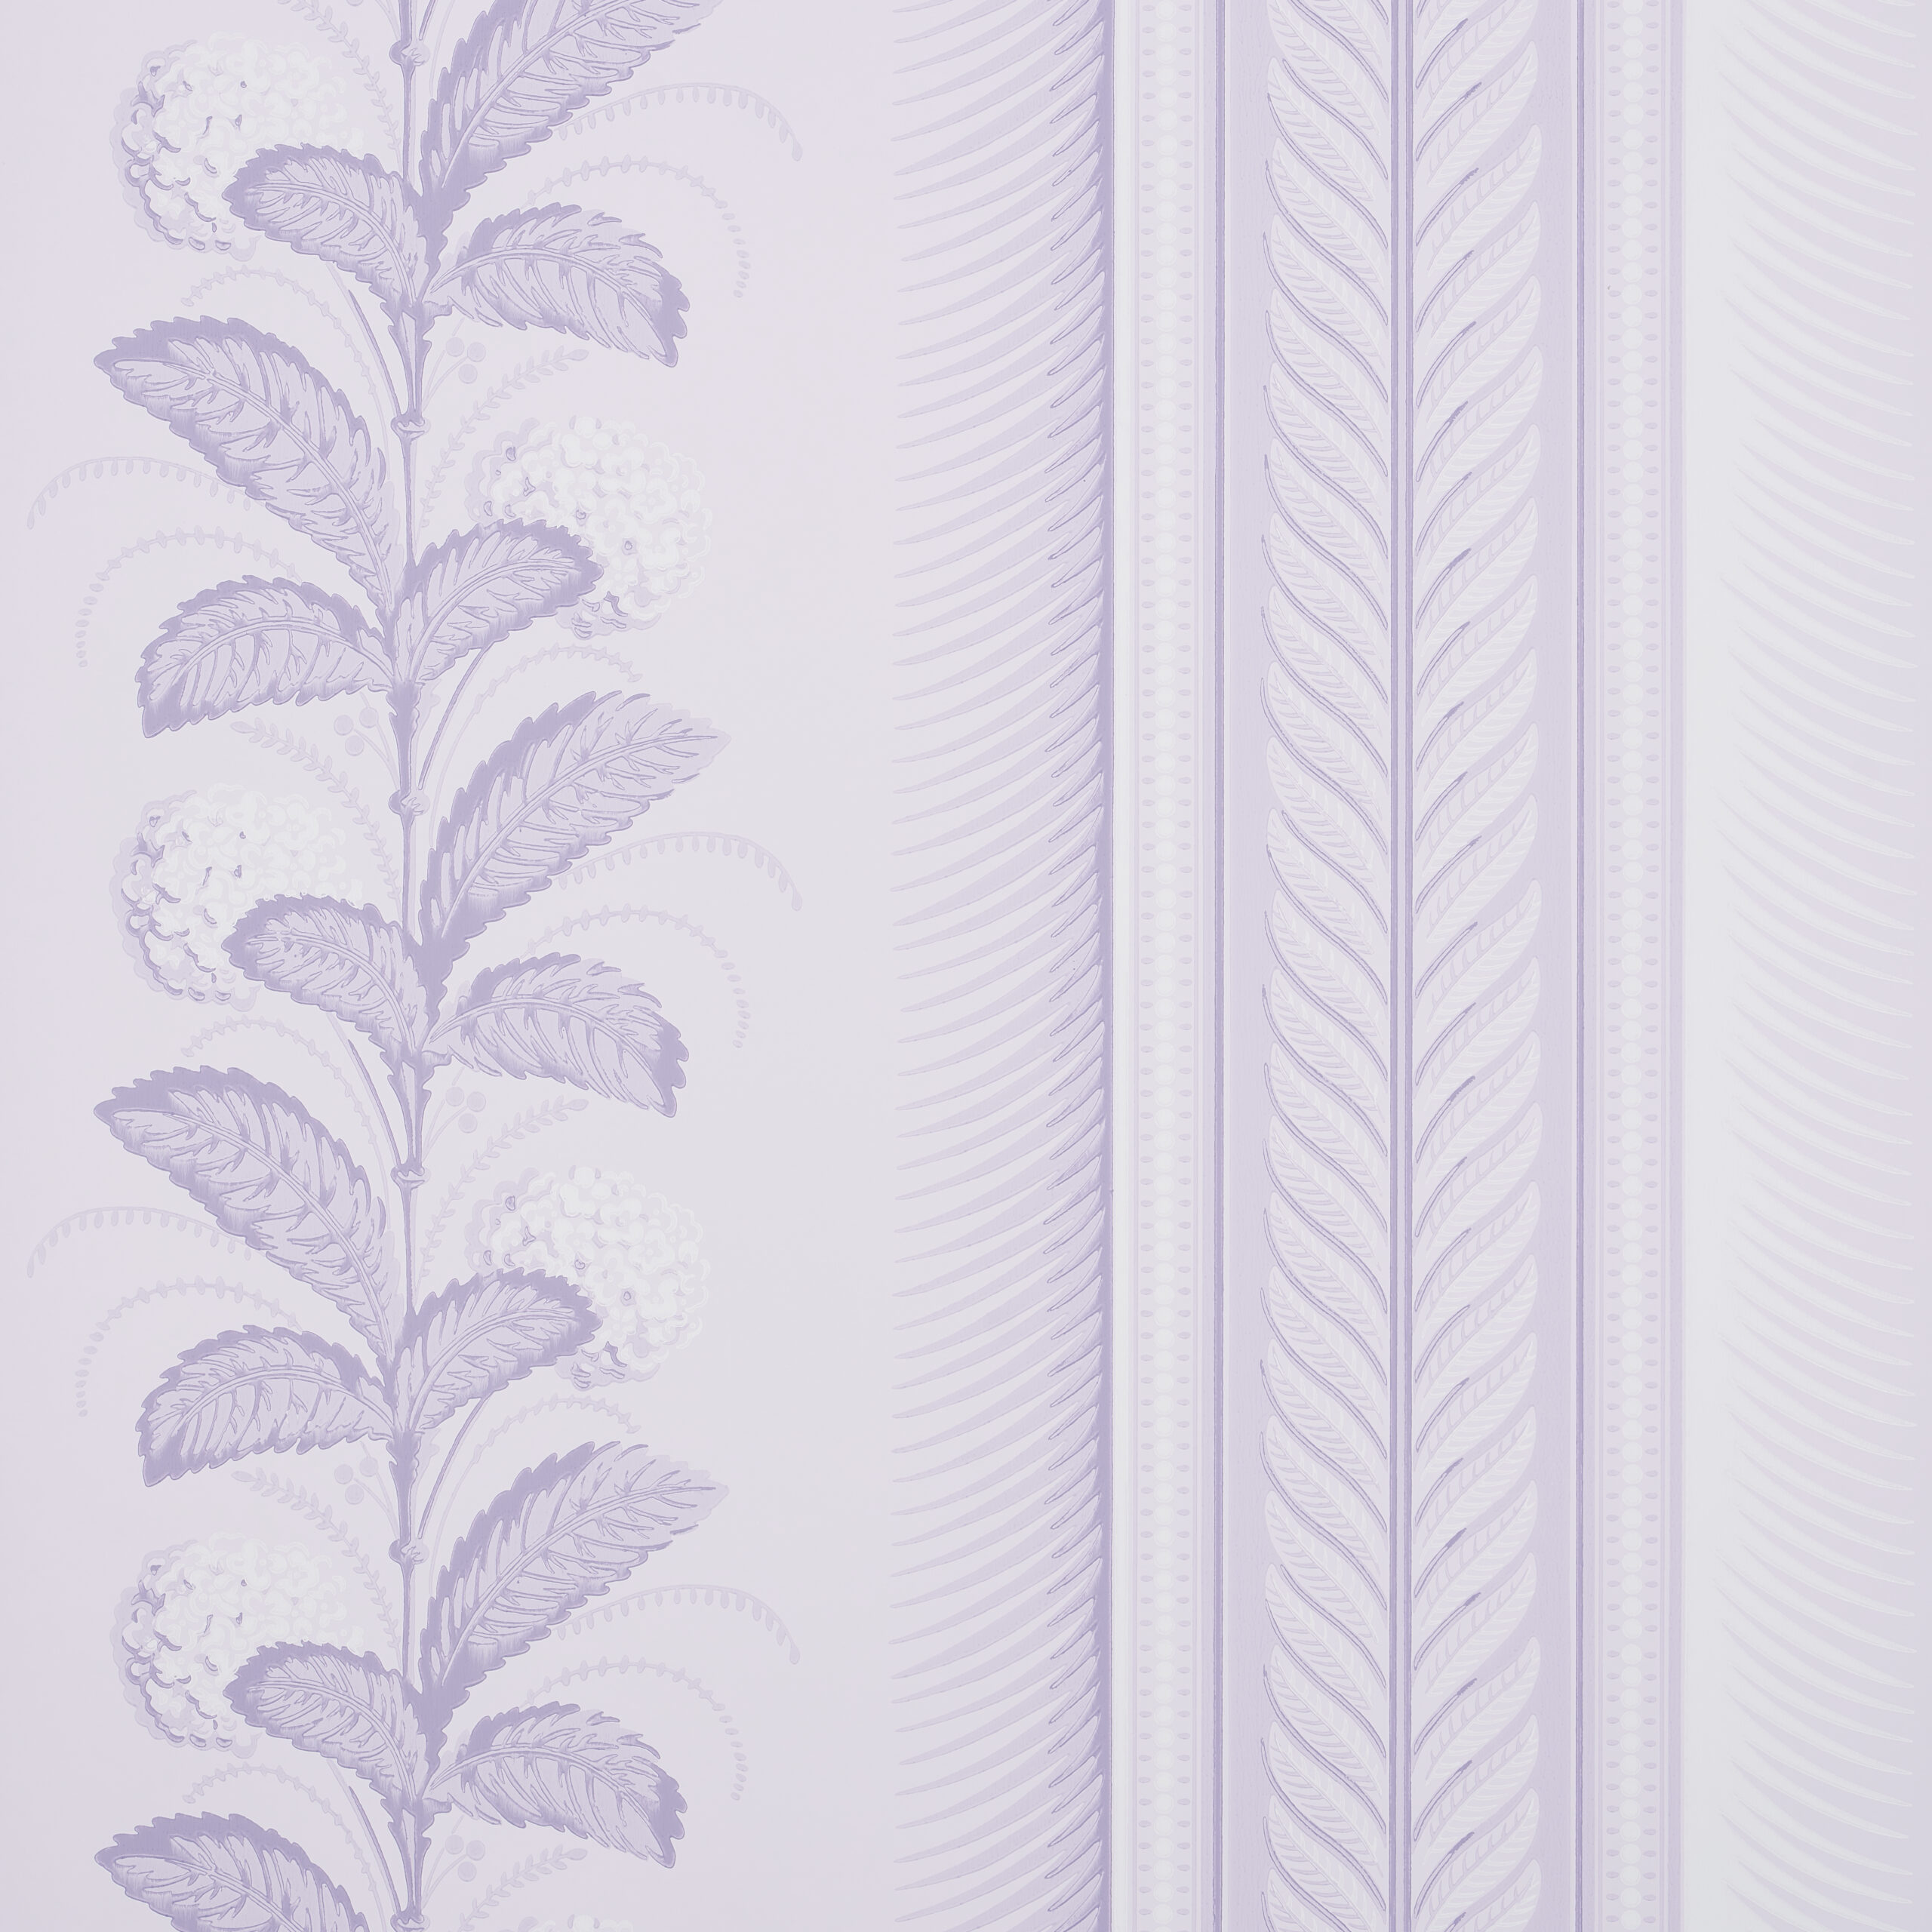 Hydrangea Drape in Lilac